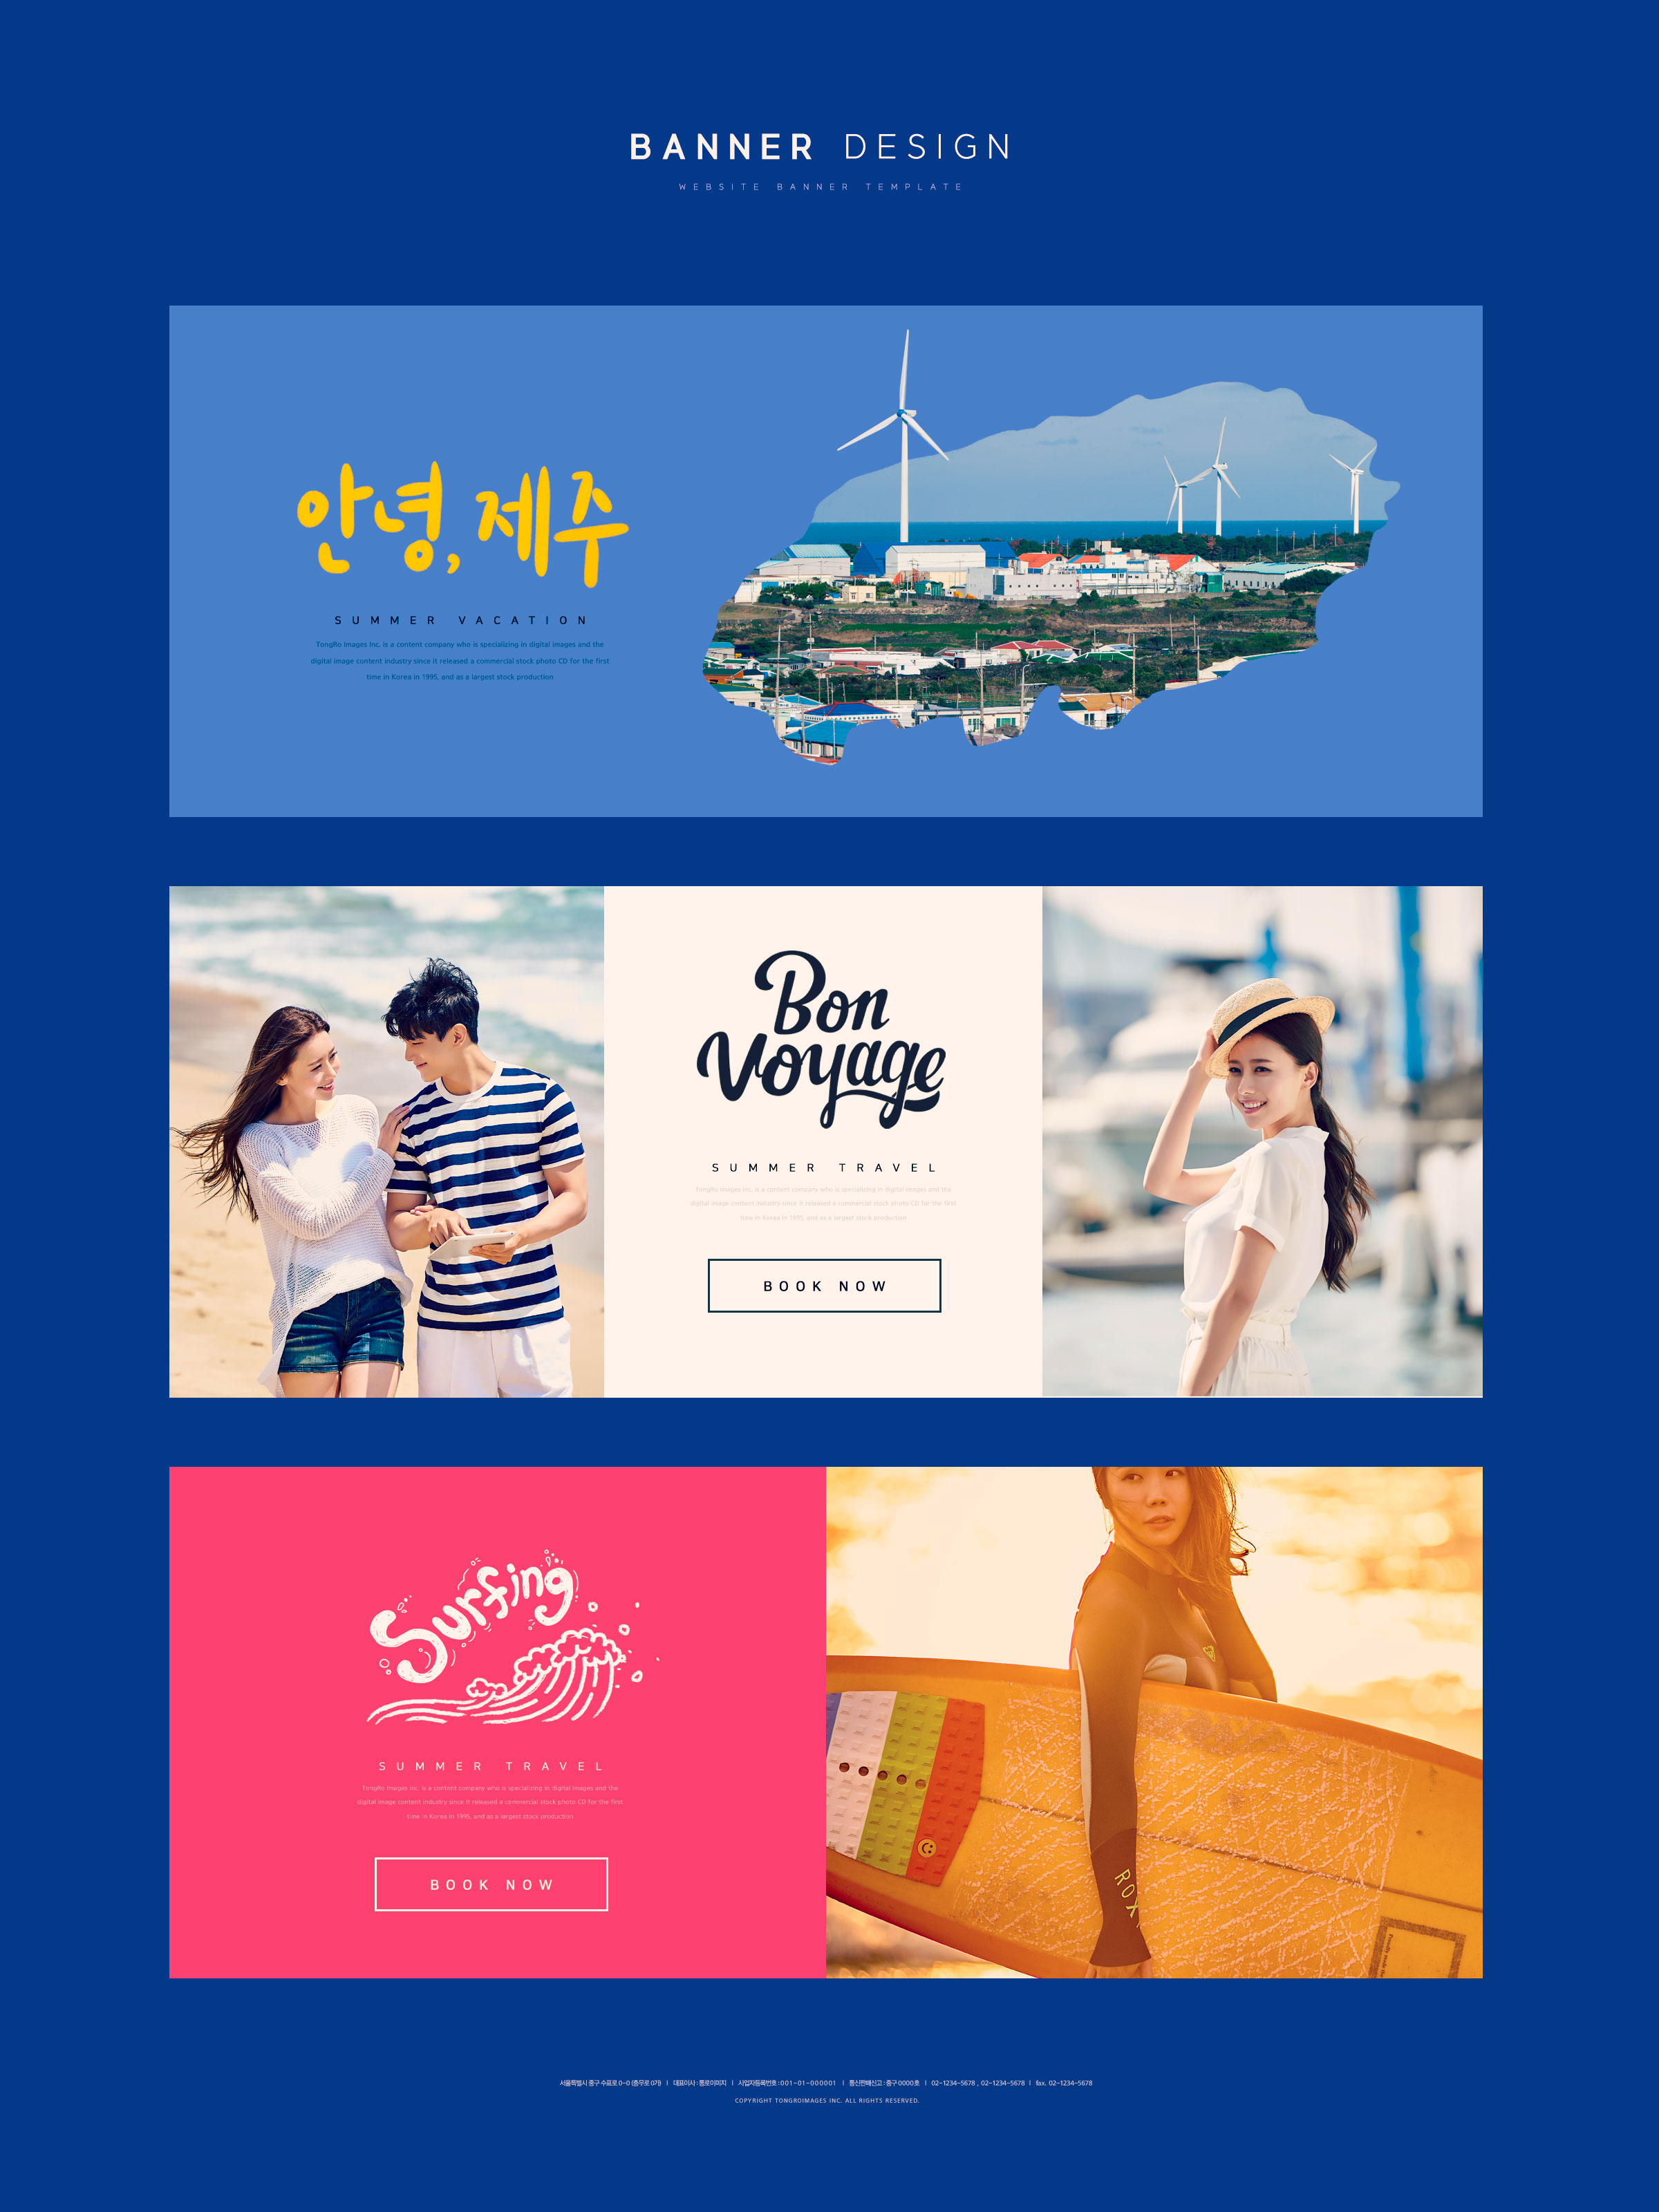 夏季假期旅行社网站广告Banner设计模板插图